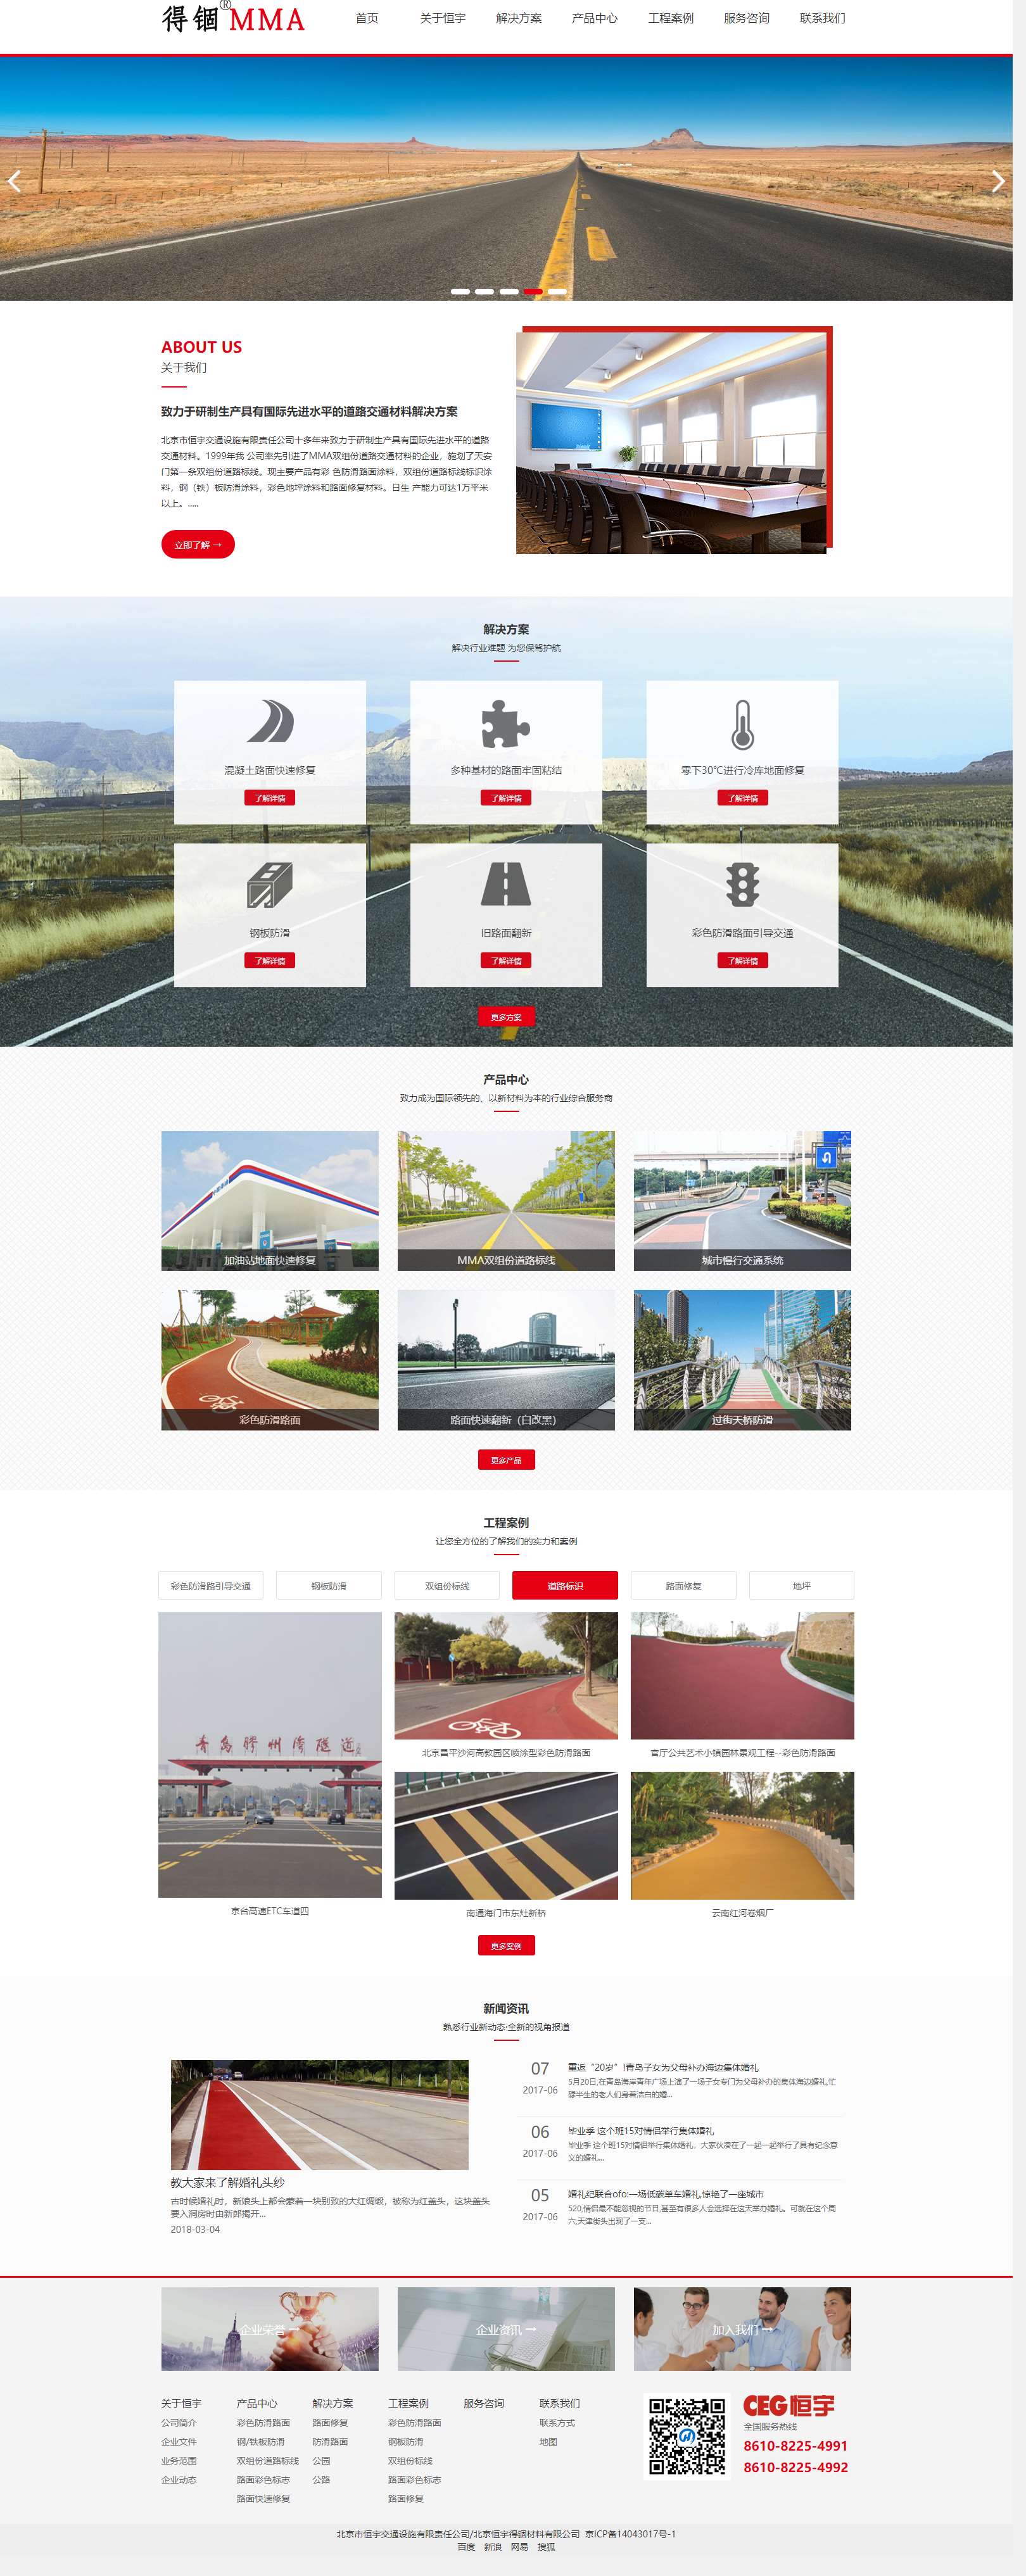 红色扁平风格的交通设施公司企业网站源码下载